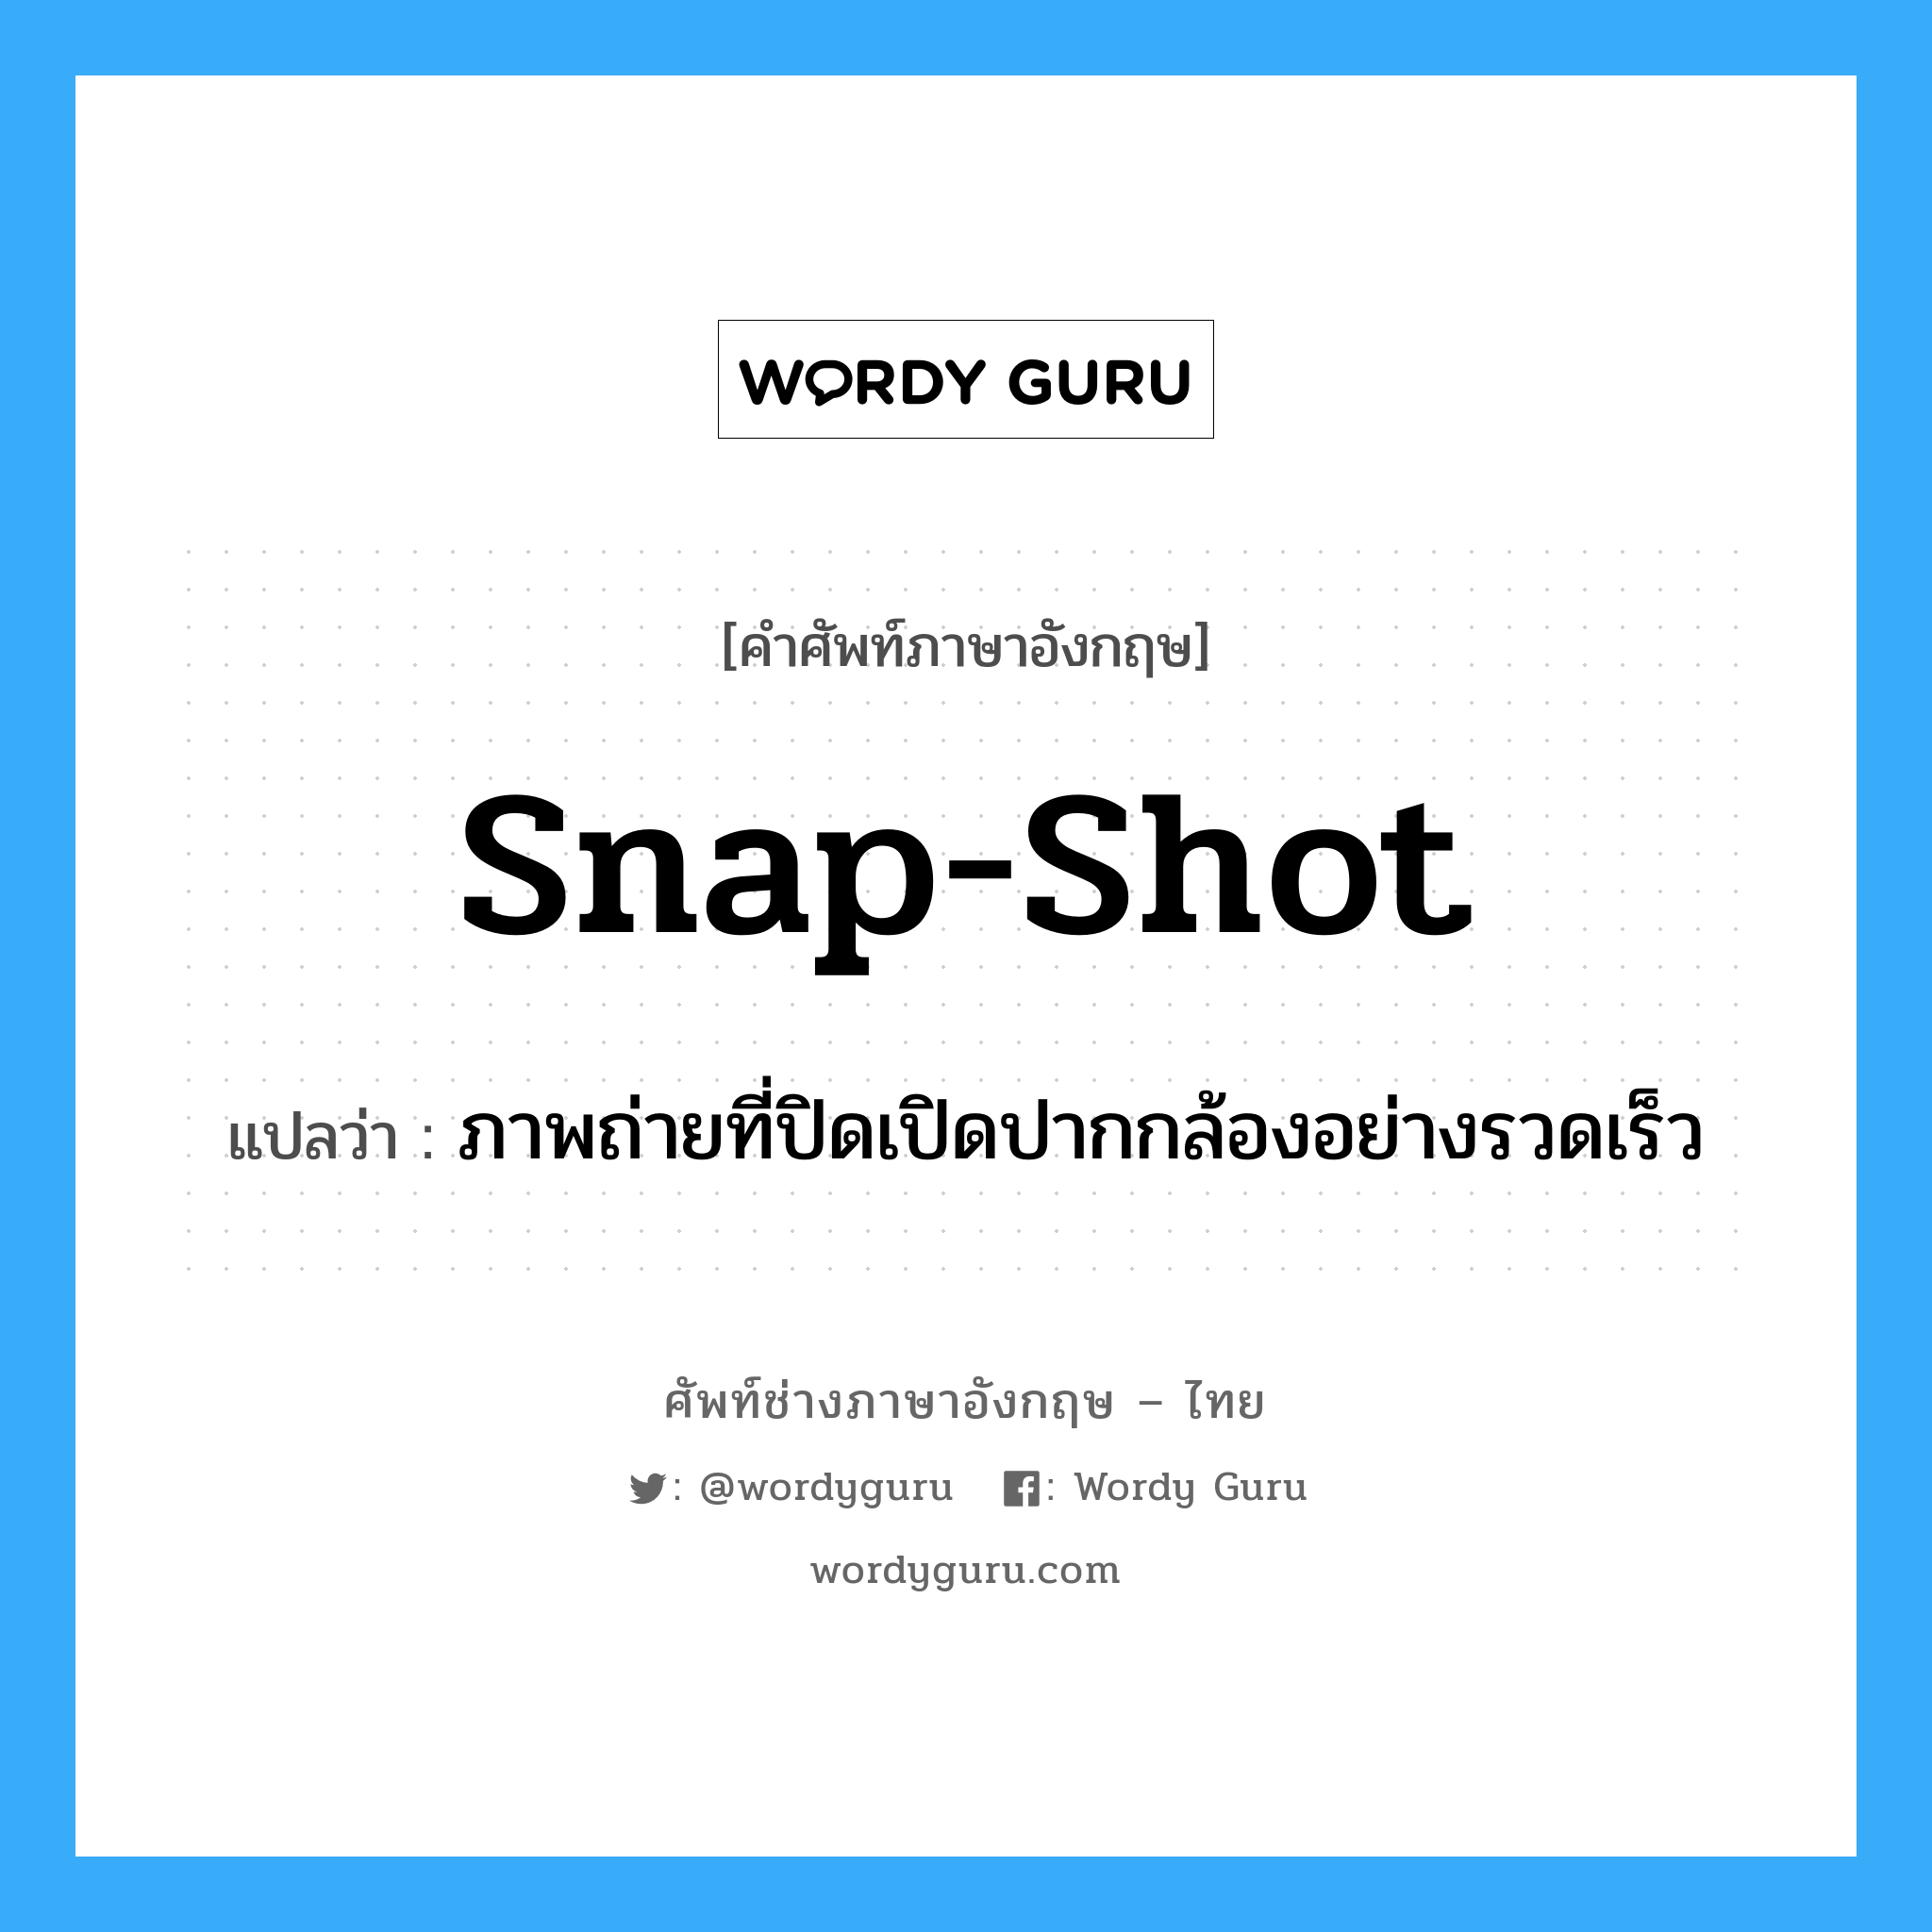 snap-shot แปลว่า?, คำศัพท์ช่างภาษาอังกฤษ - ไทย snap-shot คำศัพท์ภาษาอังกฤษ snap-shot แปลว่า ภาพถ่ายที่ปิดเปิดปากกล้องอย่างรวดเร็ว